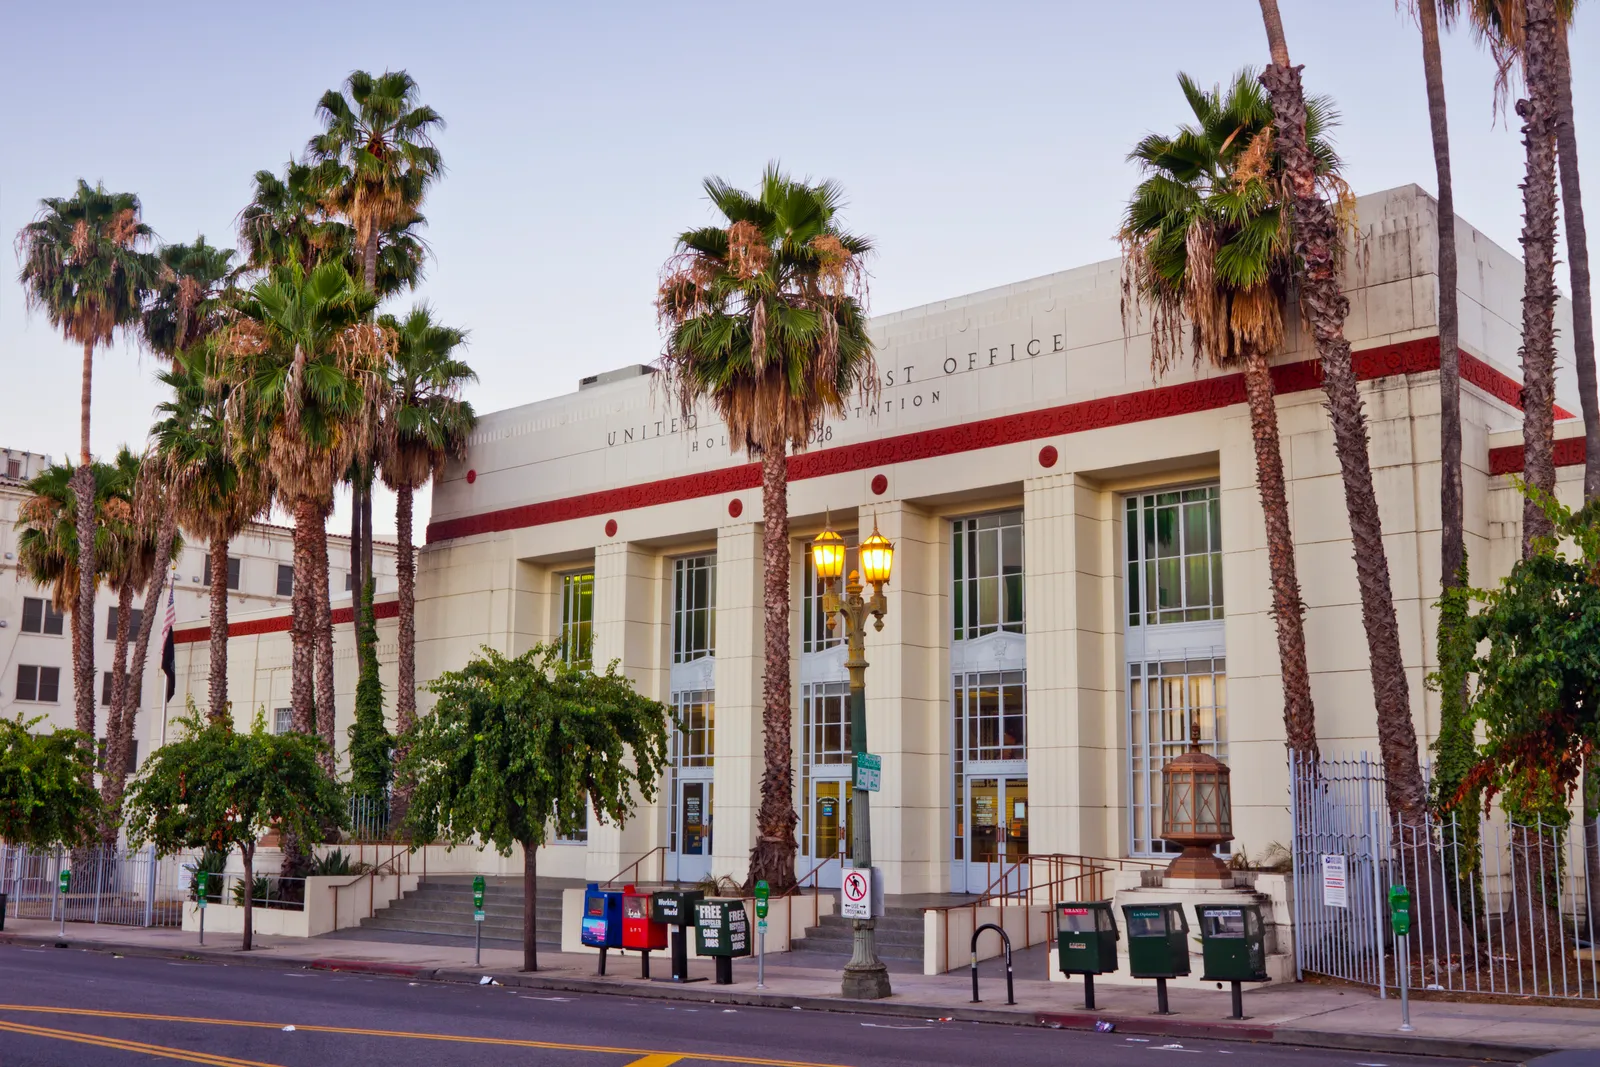 Los Angeles, California Năm 1937, Cơ quan quản lý tiến độ công trình, một cơ quan Thỏa thuận mới tuyển dụng người Mỹ cho các dự án công trình công cộng, đã ủy quyền cho Claud Beelman thiết kế một bưu điện ở Los Angeles. Kết quả: một kiệt tác Art Deco sắp xếp hợp lý nằm dọc theo hai đại lộ mang tính biểu tượng nhất của thành phố, Sunset và Hollywood. Tòa nhà hầu như không thay đổi so với khi nó được thiết kế lần đầu tiên và hiện nằm trong Sổ đăng ký Địa điểm Lịch sử Quốc gia.